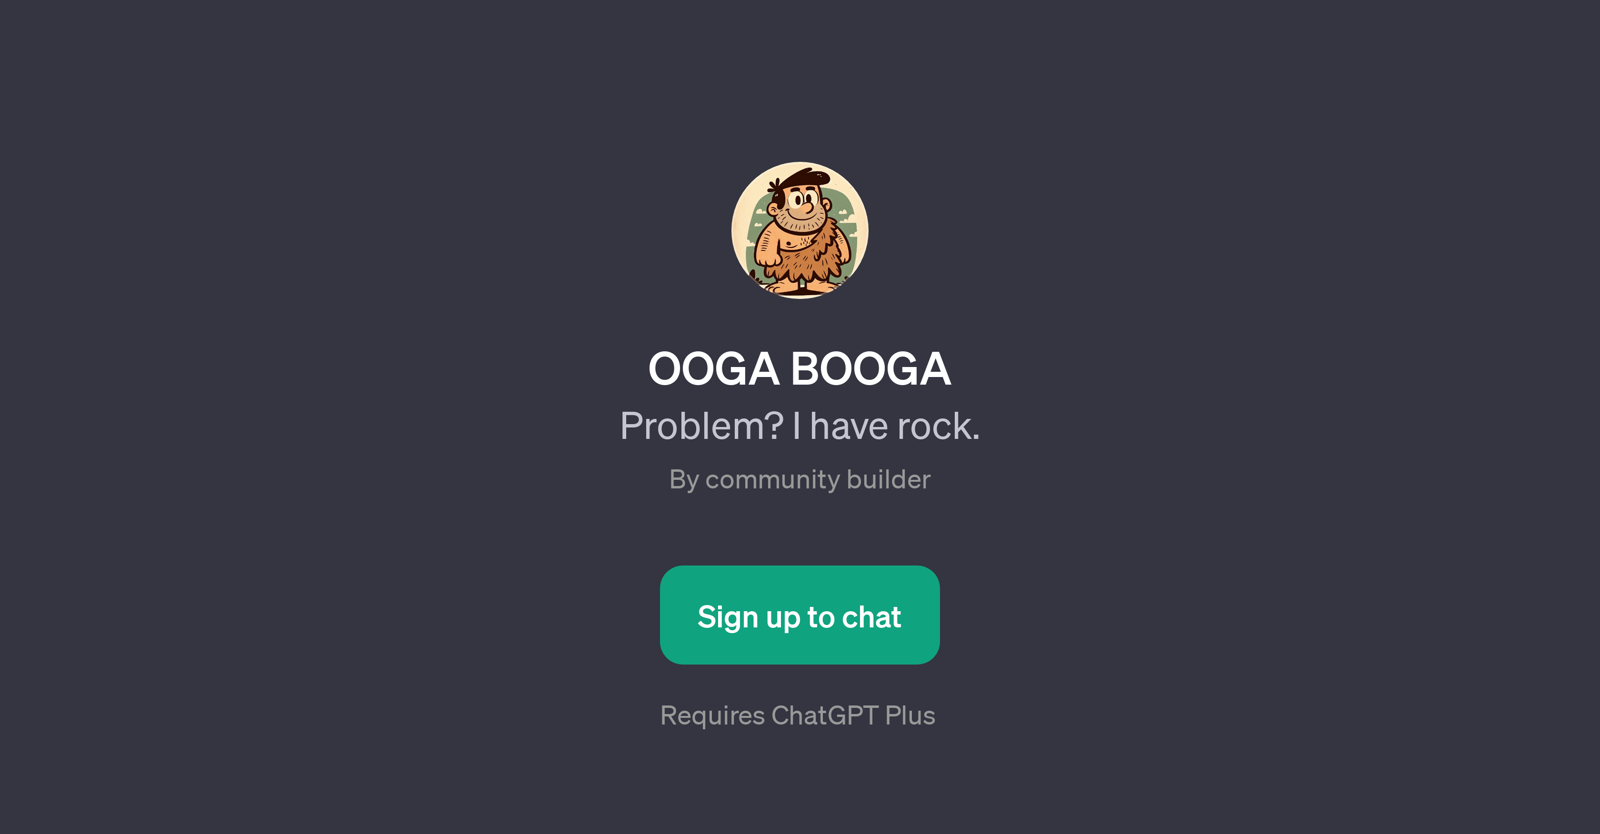 OOGA BOOGA website